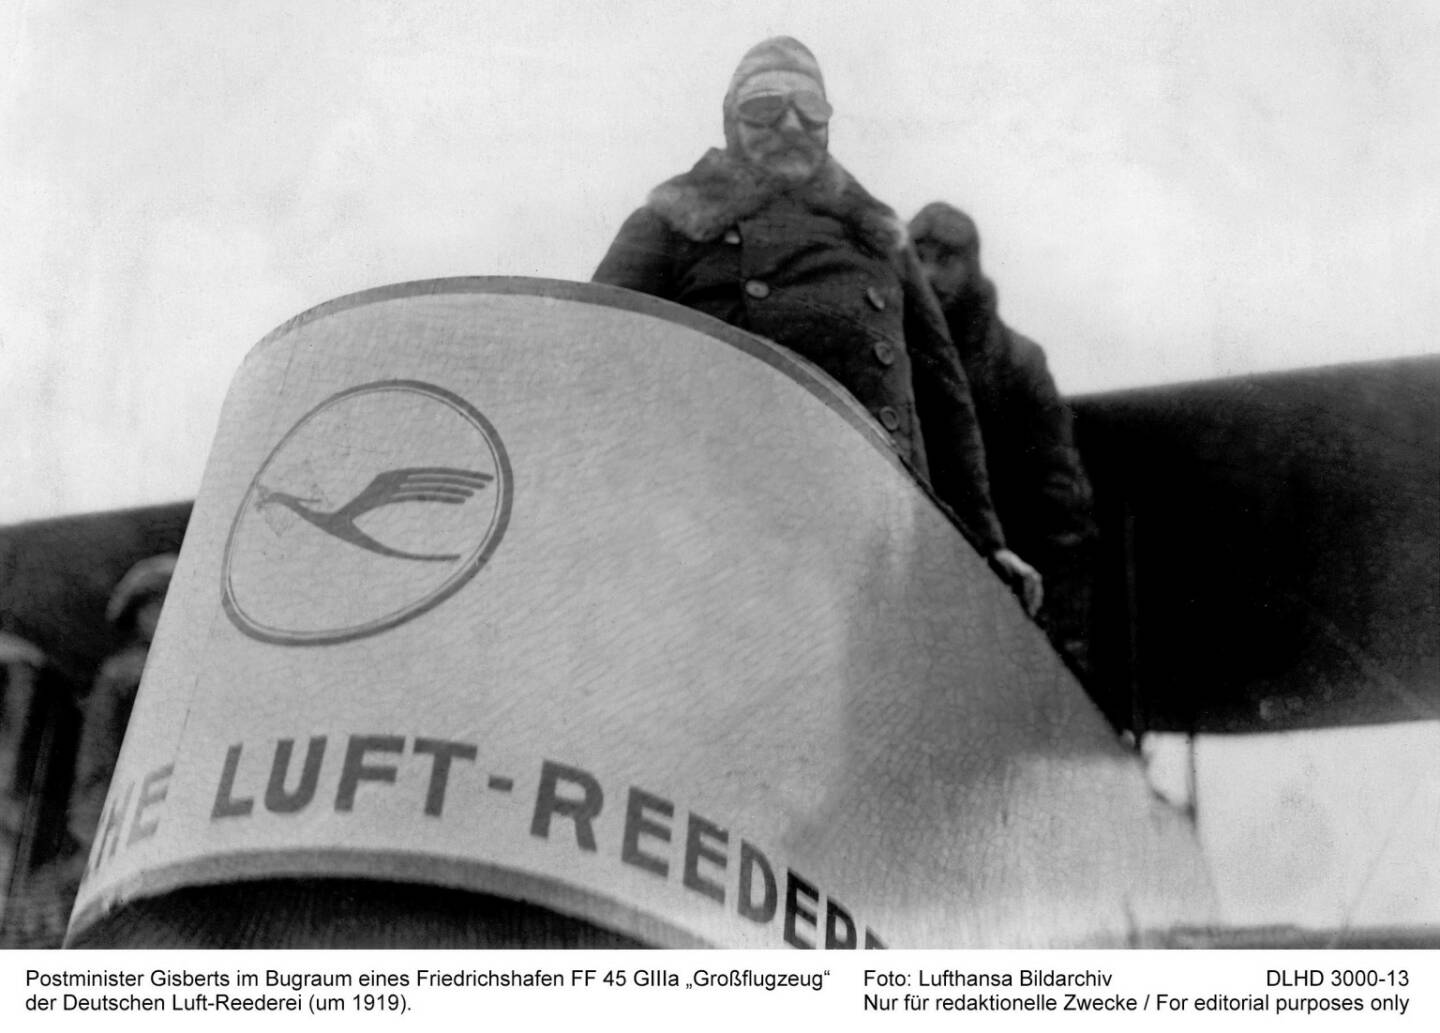 Postminister Gisberts im Bugraum eines Friedrichshafen FF 45 GIIIa Grossflugzeug der deutschen Luft-Reederei (um 1919). Foto: LH-Bildarchiv   